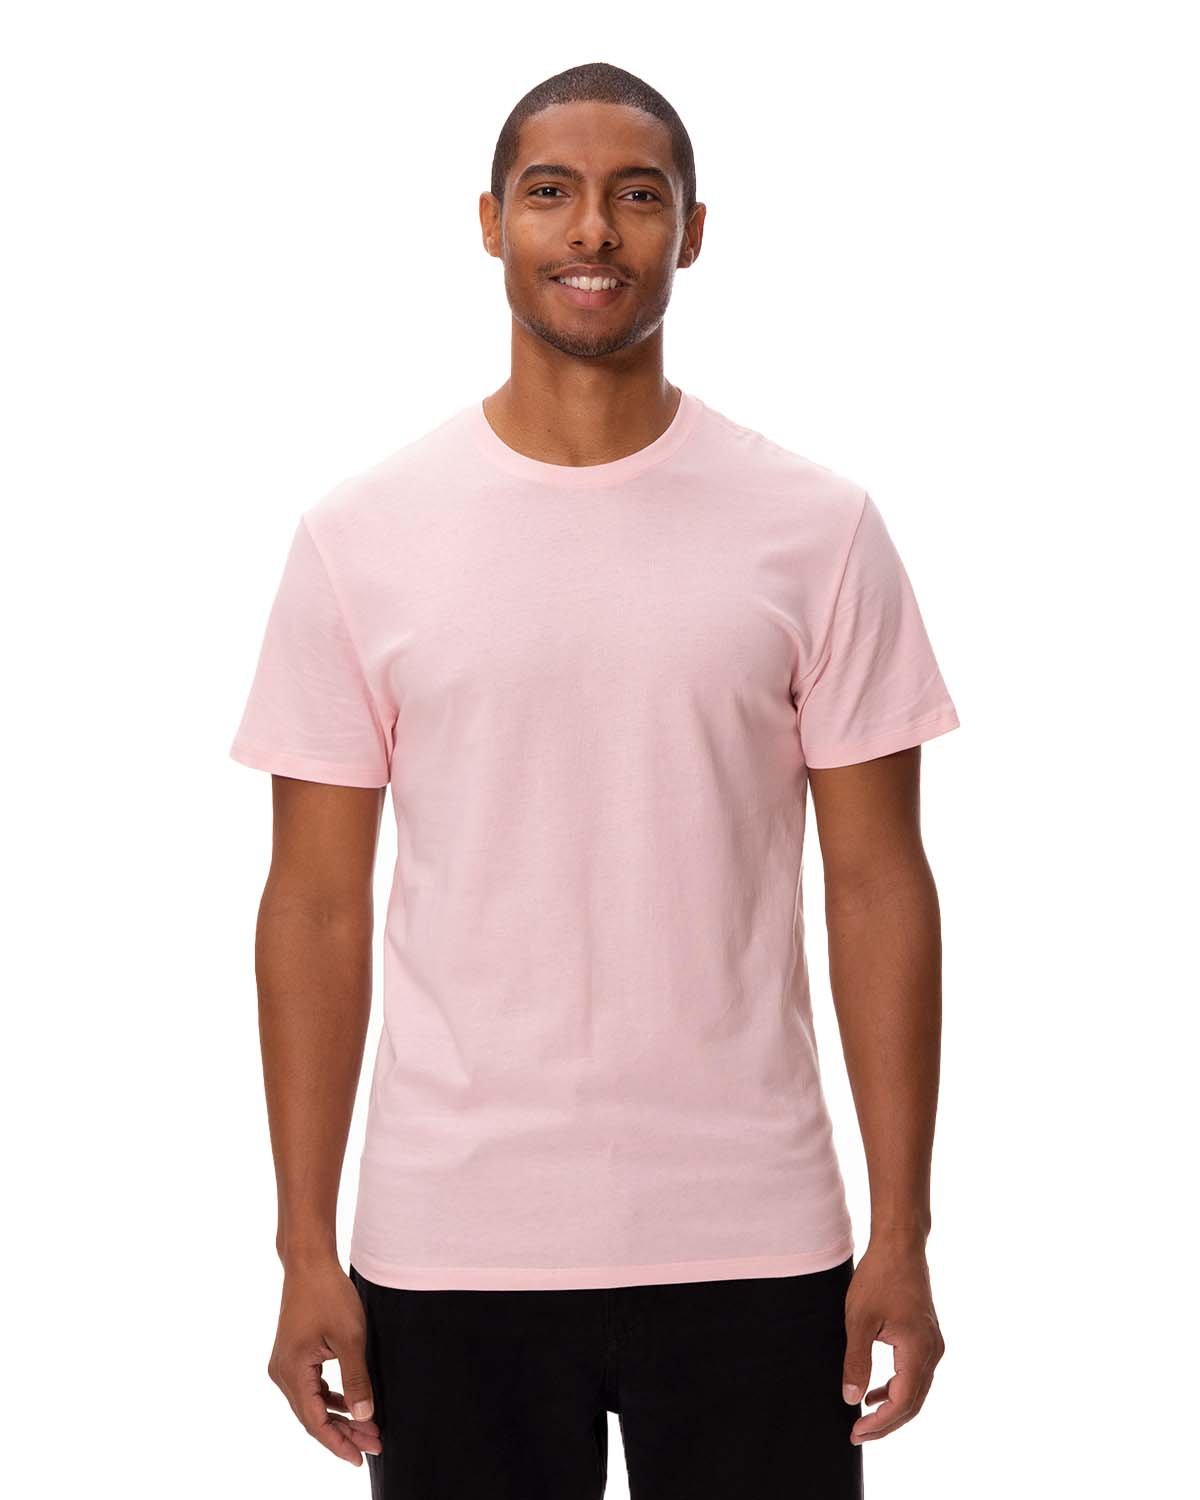 Threadfast Unisex Ultimate Cotton T-Shirt POWDER PINK 